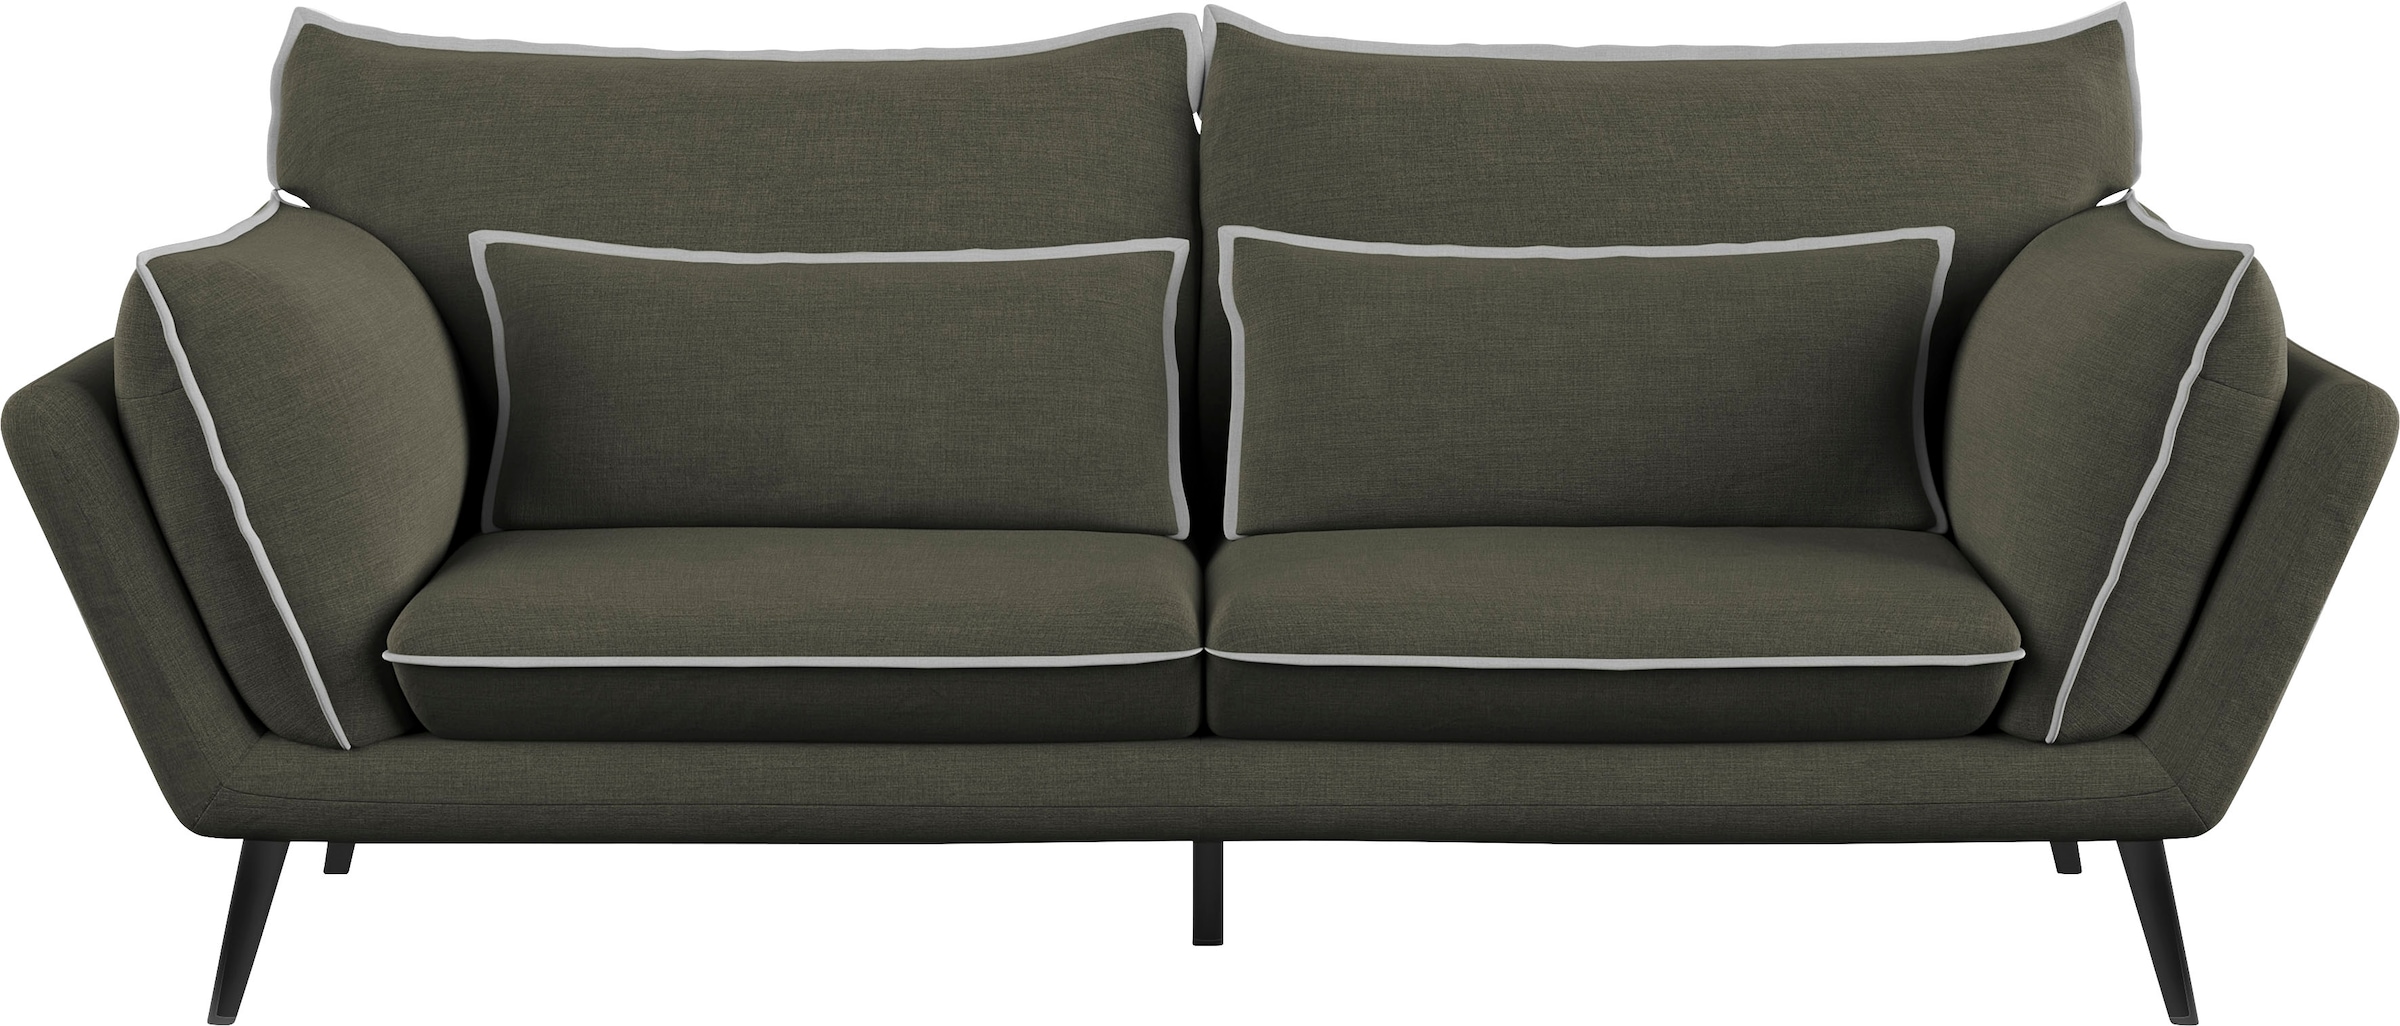 DESIGN Sofa kaufen Leonique 2021 SPECIAL mit »Mara«, 3-Sitzer, ausgezeichnet GERMAN online dem AWARD